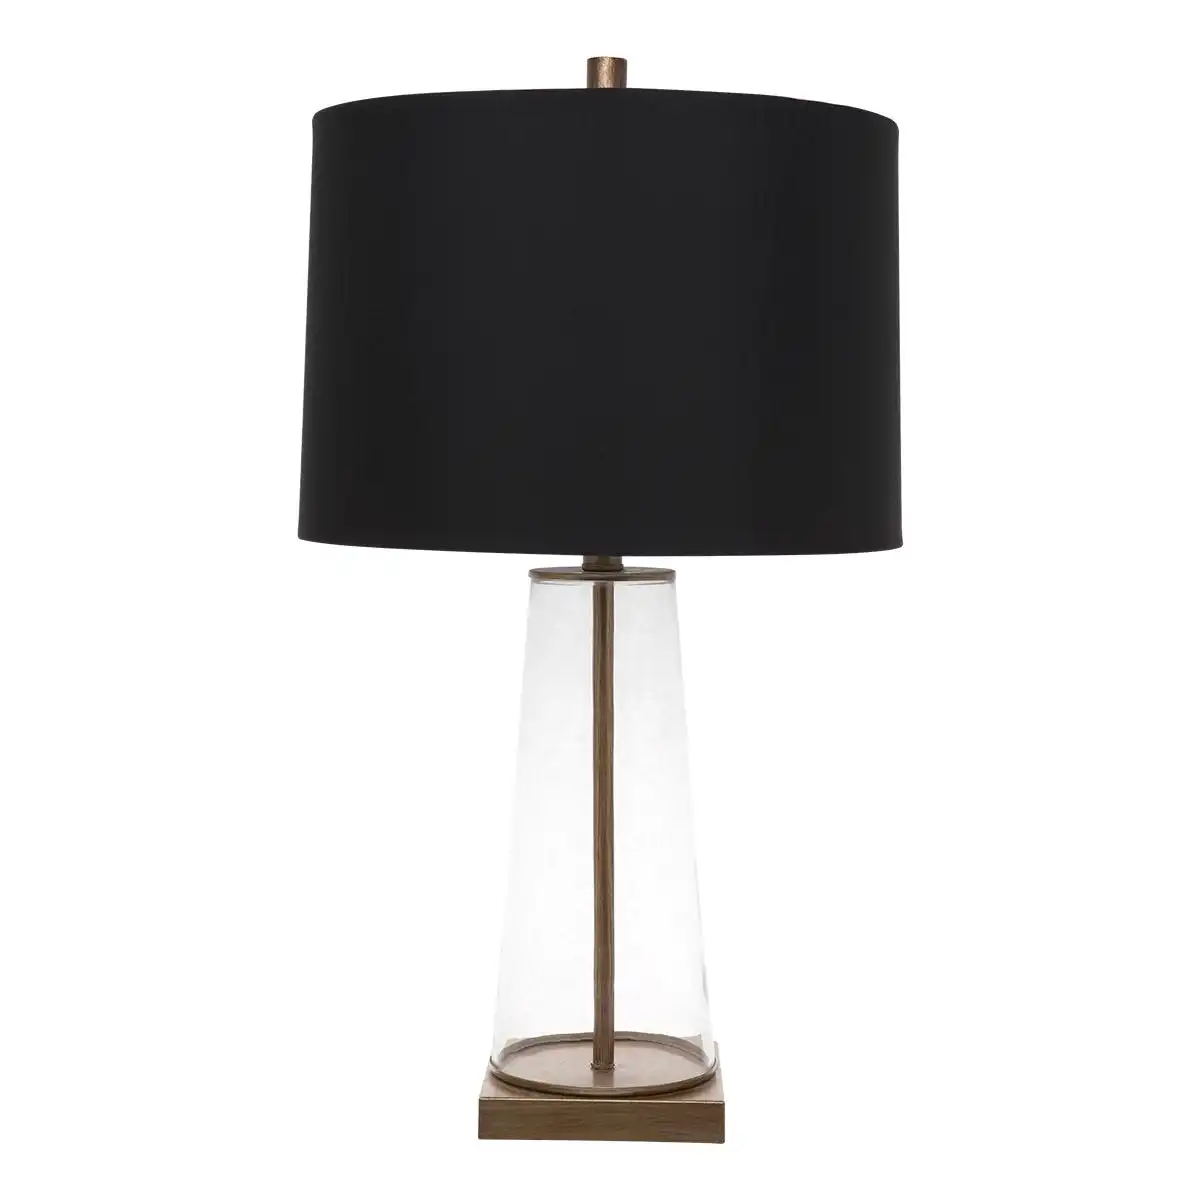 Aspen Table Lamp - Black